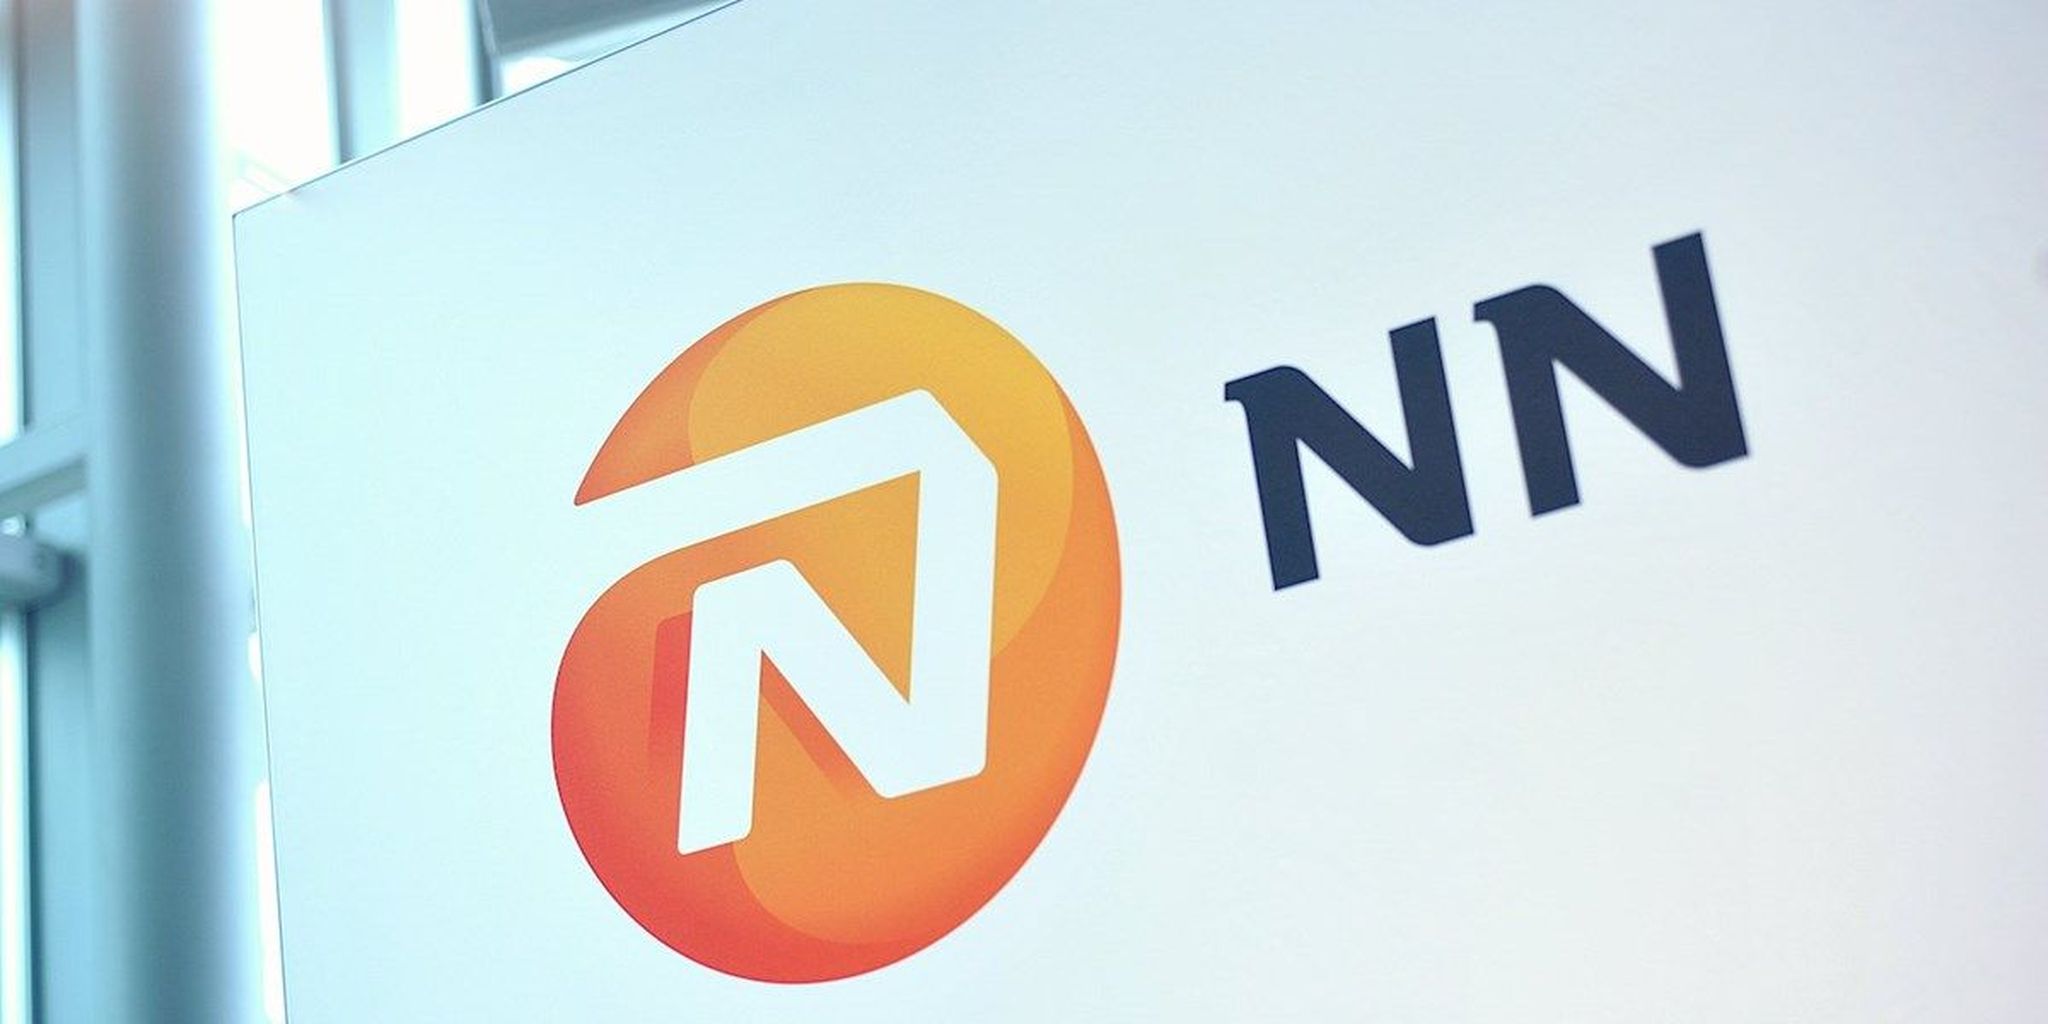 NN Group verliest 14 miljard euro op obligaties